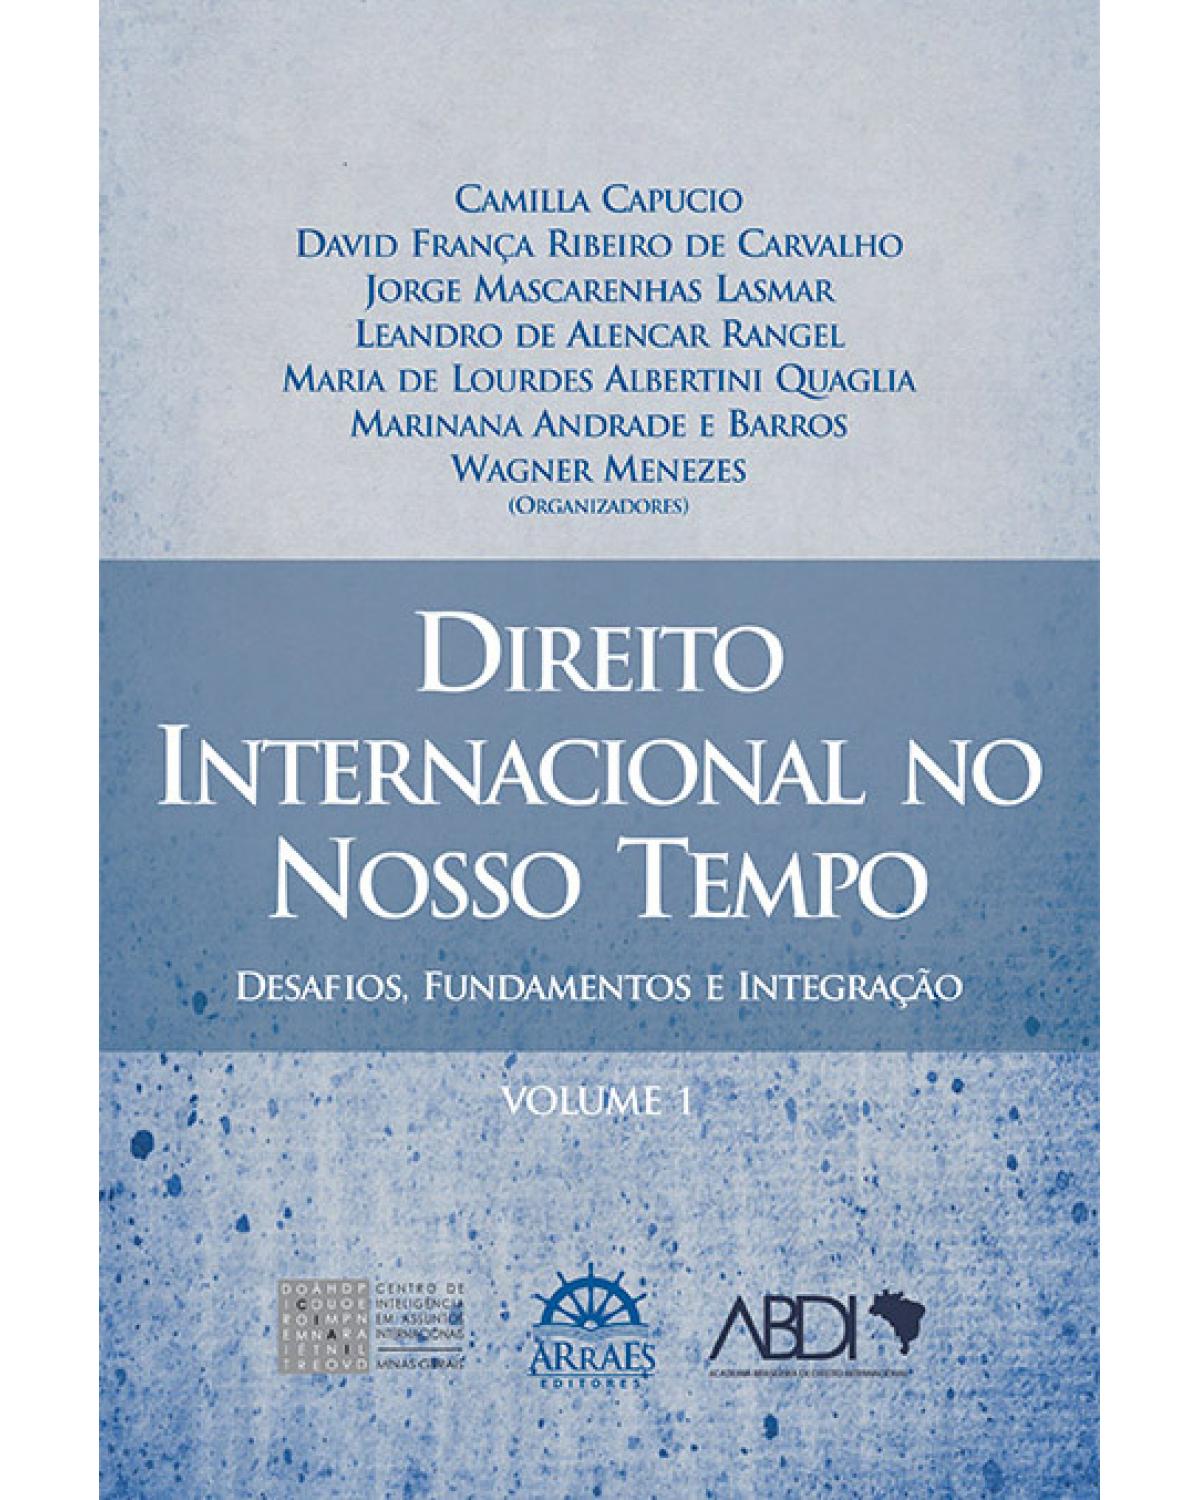 Direito internacional no nosso tempo - Volume 1: desafios, fundamentos e integração - 1ª Edição | 2013